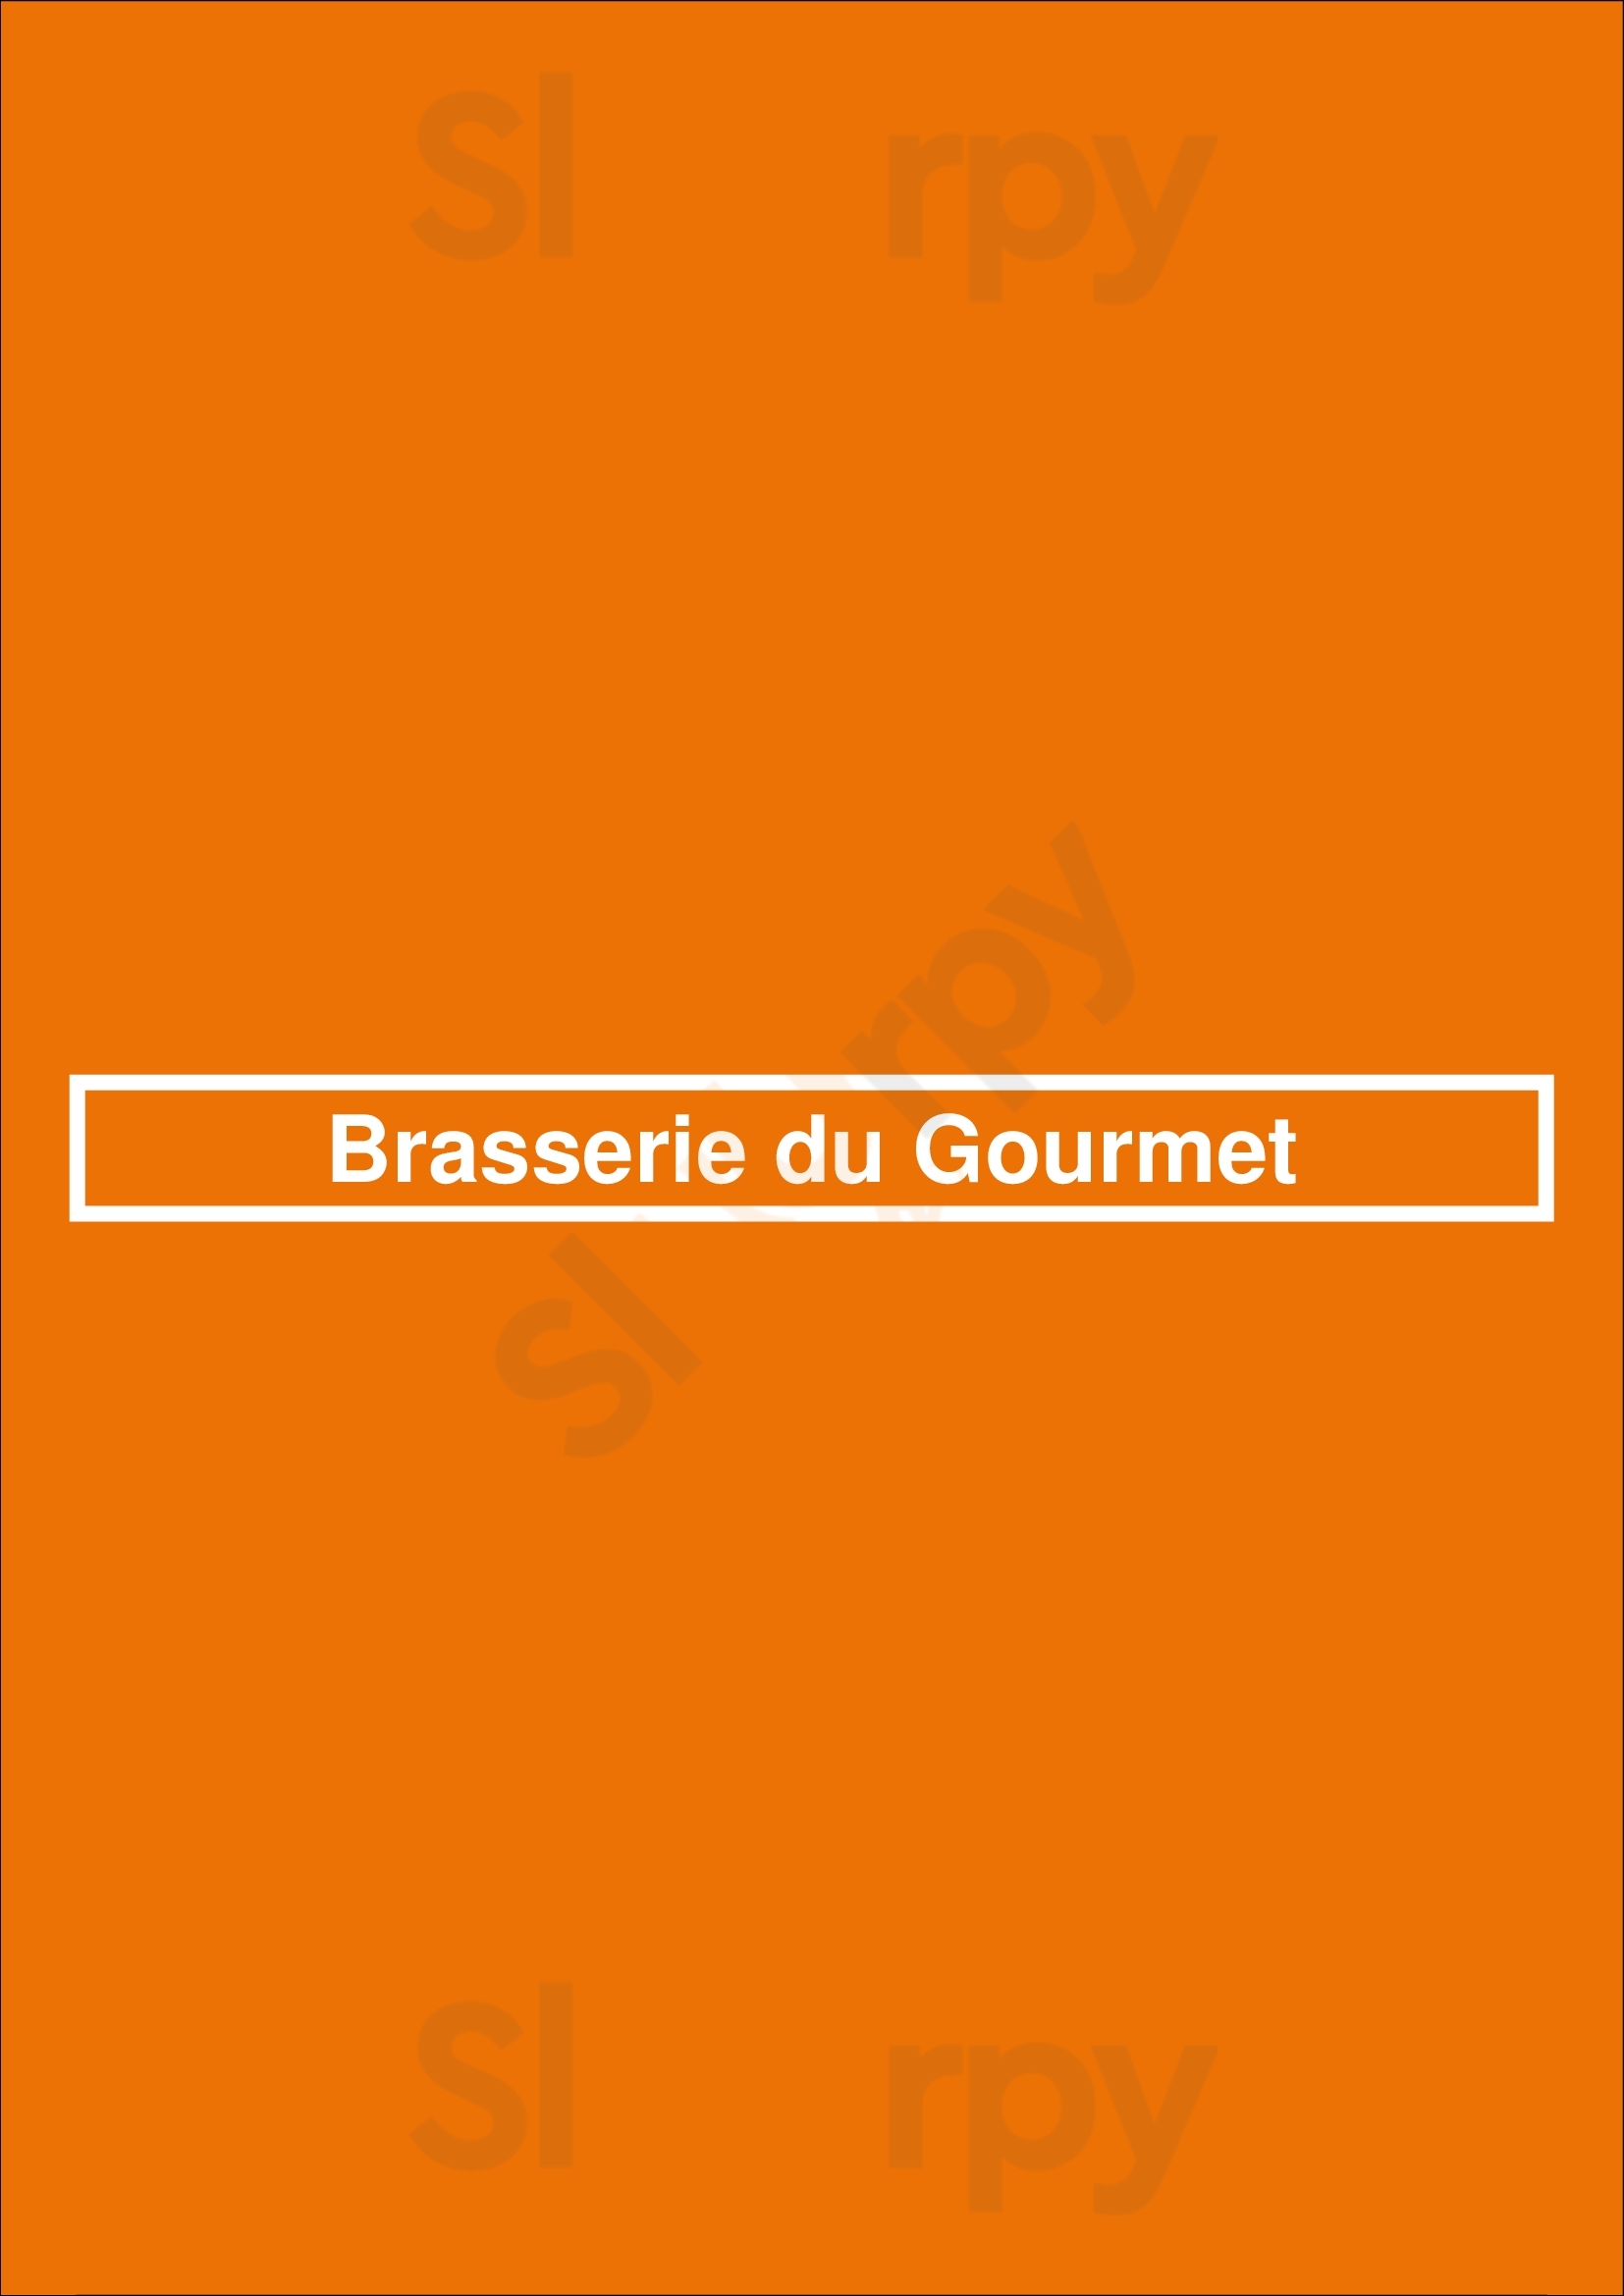 Brasserie Du Gourmet Bruxelles Menu - 1